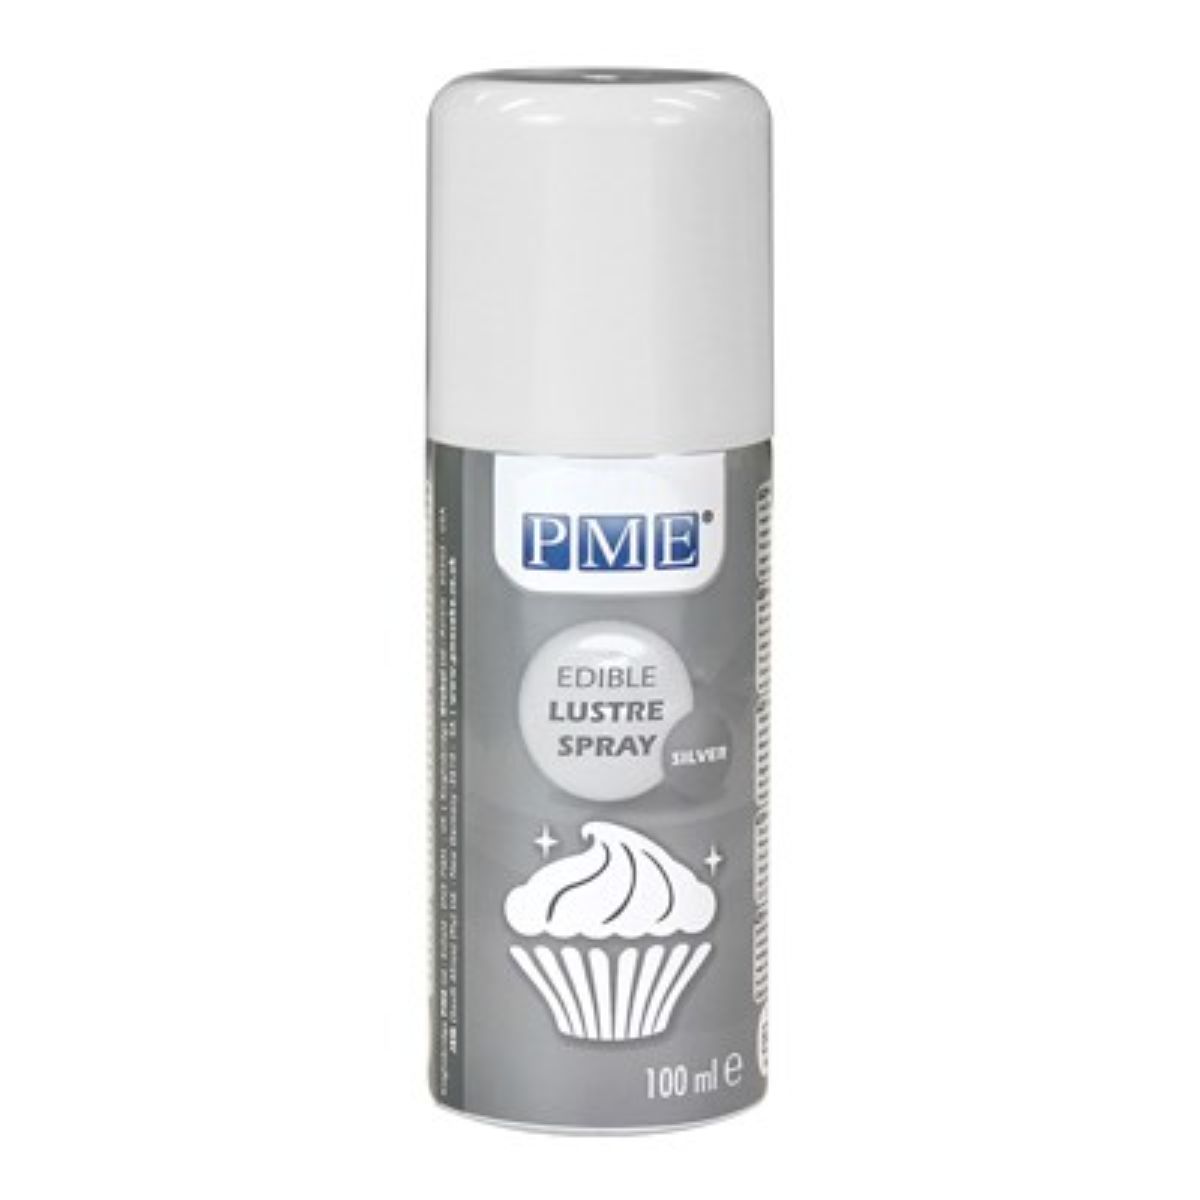 PME Silver Edible Luster Spray 3.38oz